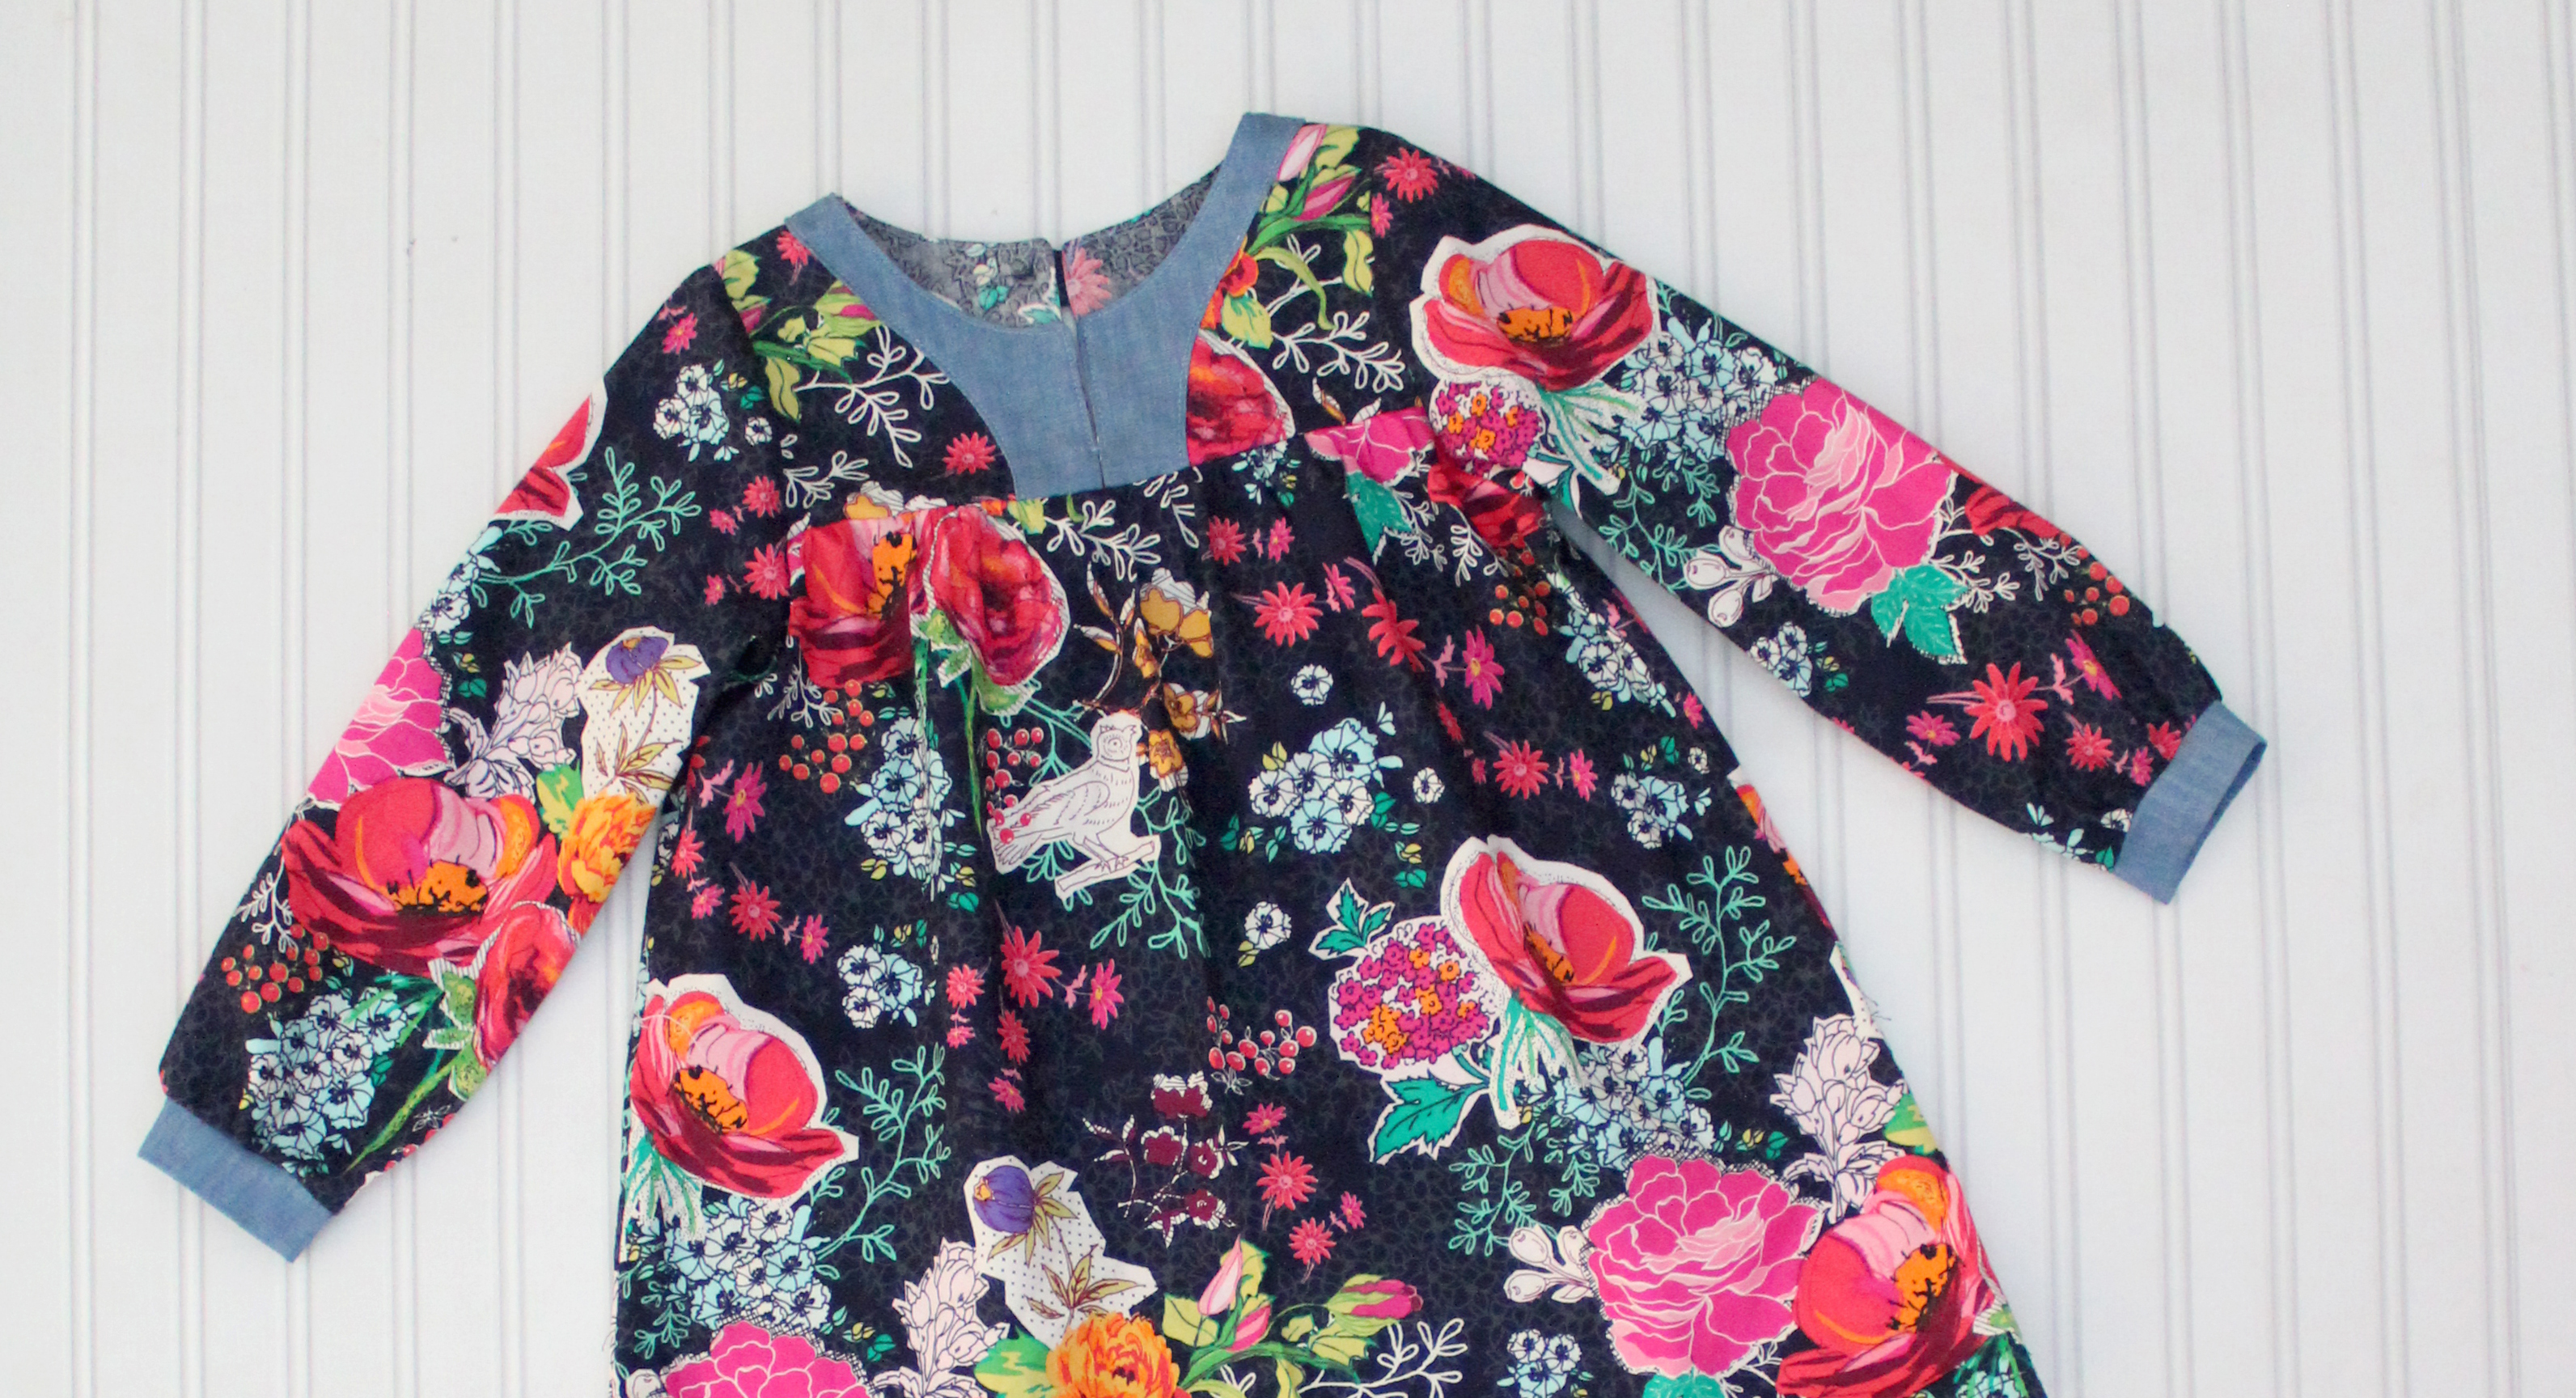 The Boho Tunic and Dress PDF Pattern by Peach Patterns sewn by Candice Ayala